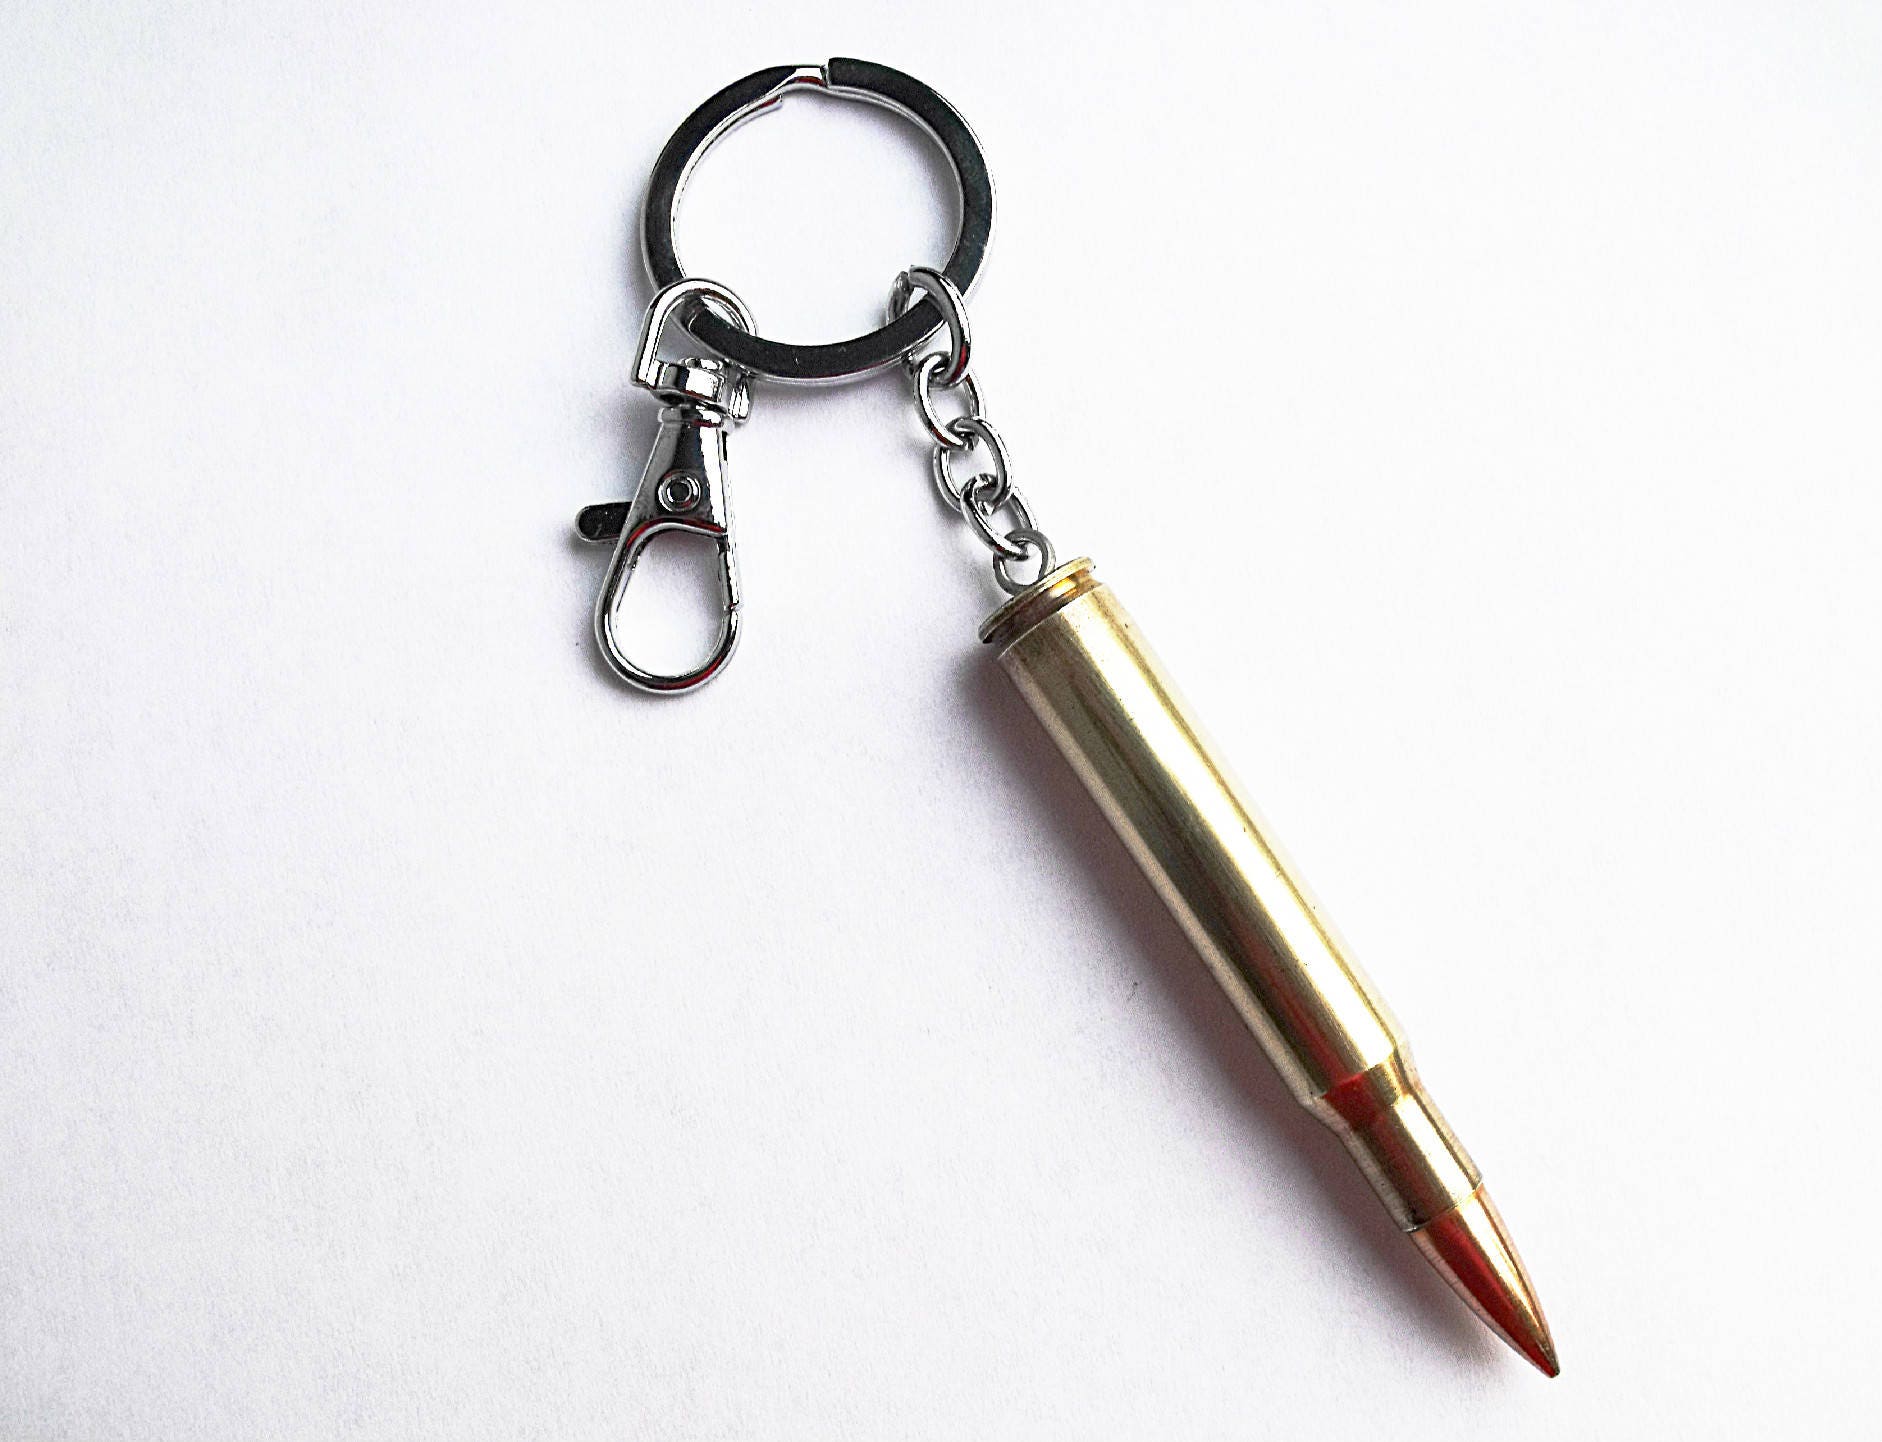 Bullet presta adapter key ring – Retrogression